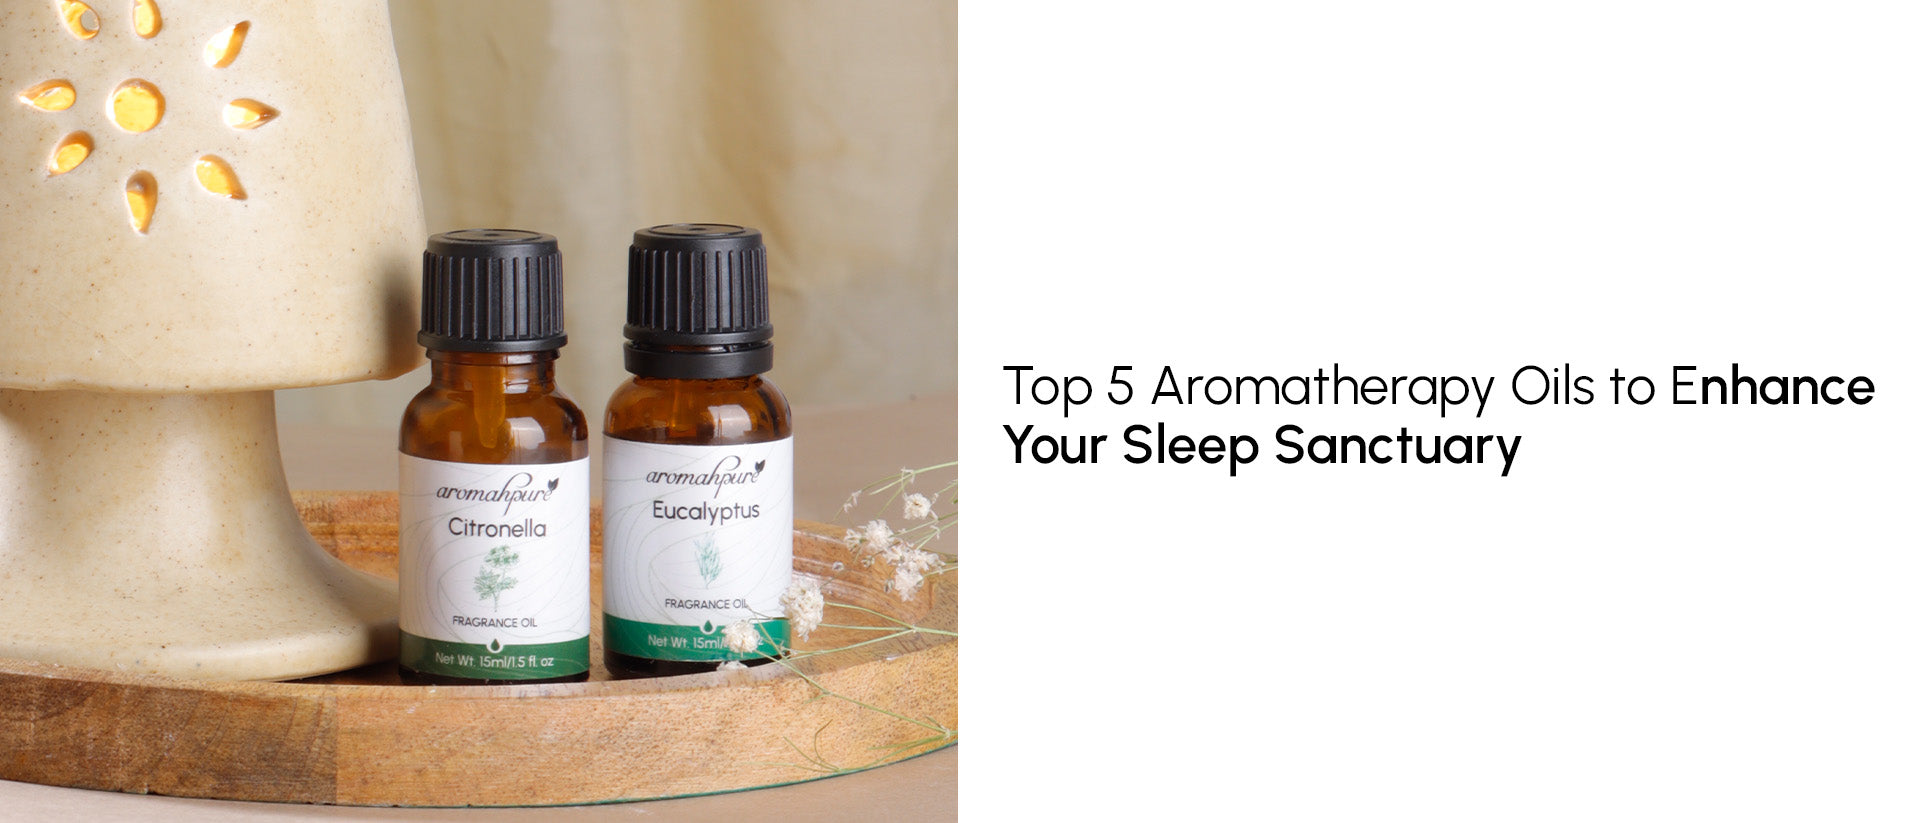 Top 5 Aromatherapy Oils to Enhance Your Sleep Sanctuary